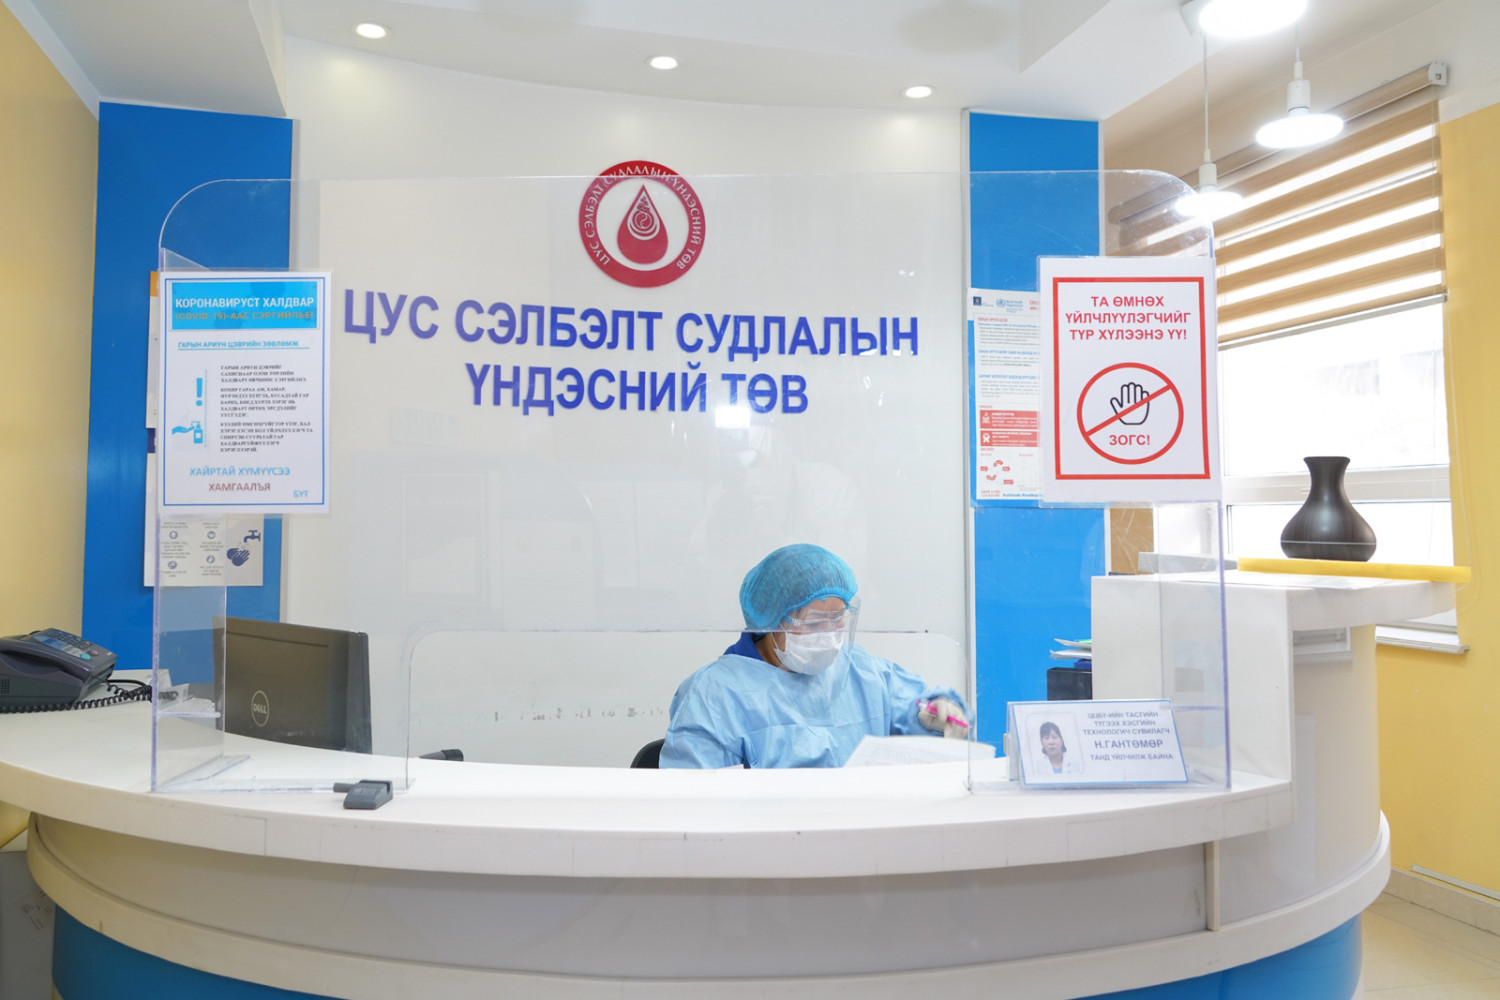 Монголын цус сэлбэлт, судлалын салбар олон улсын стандарт хангасан